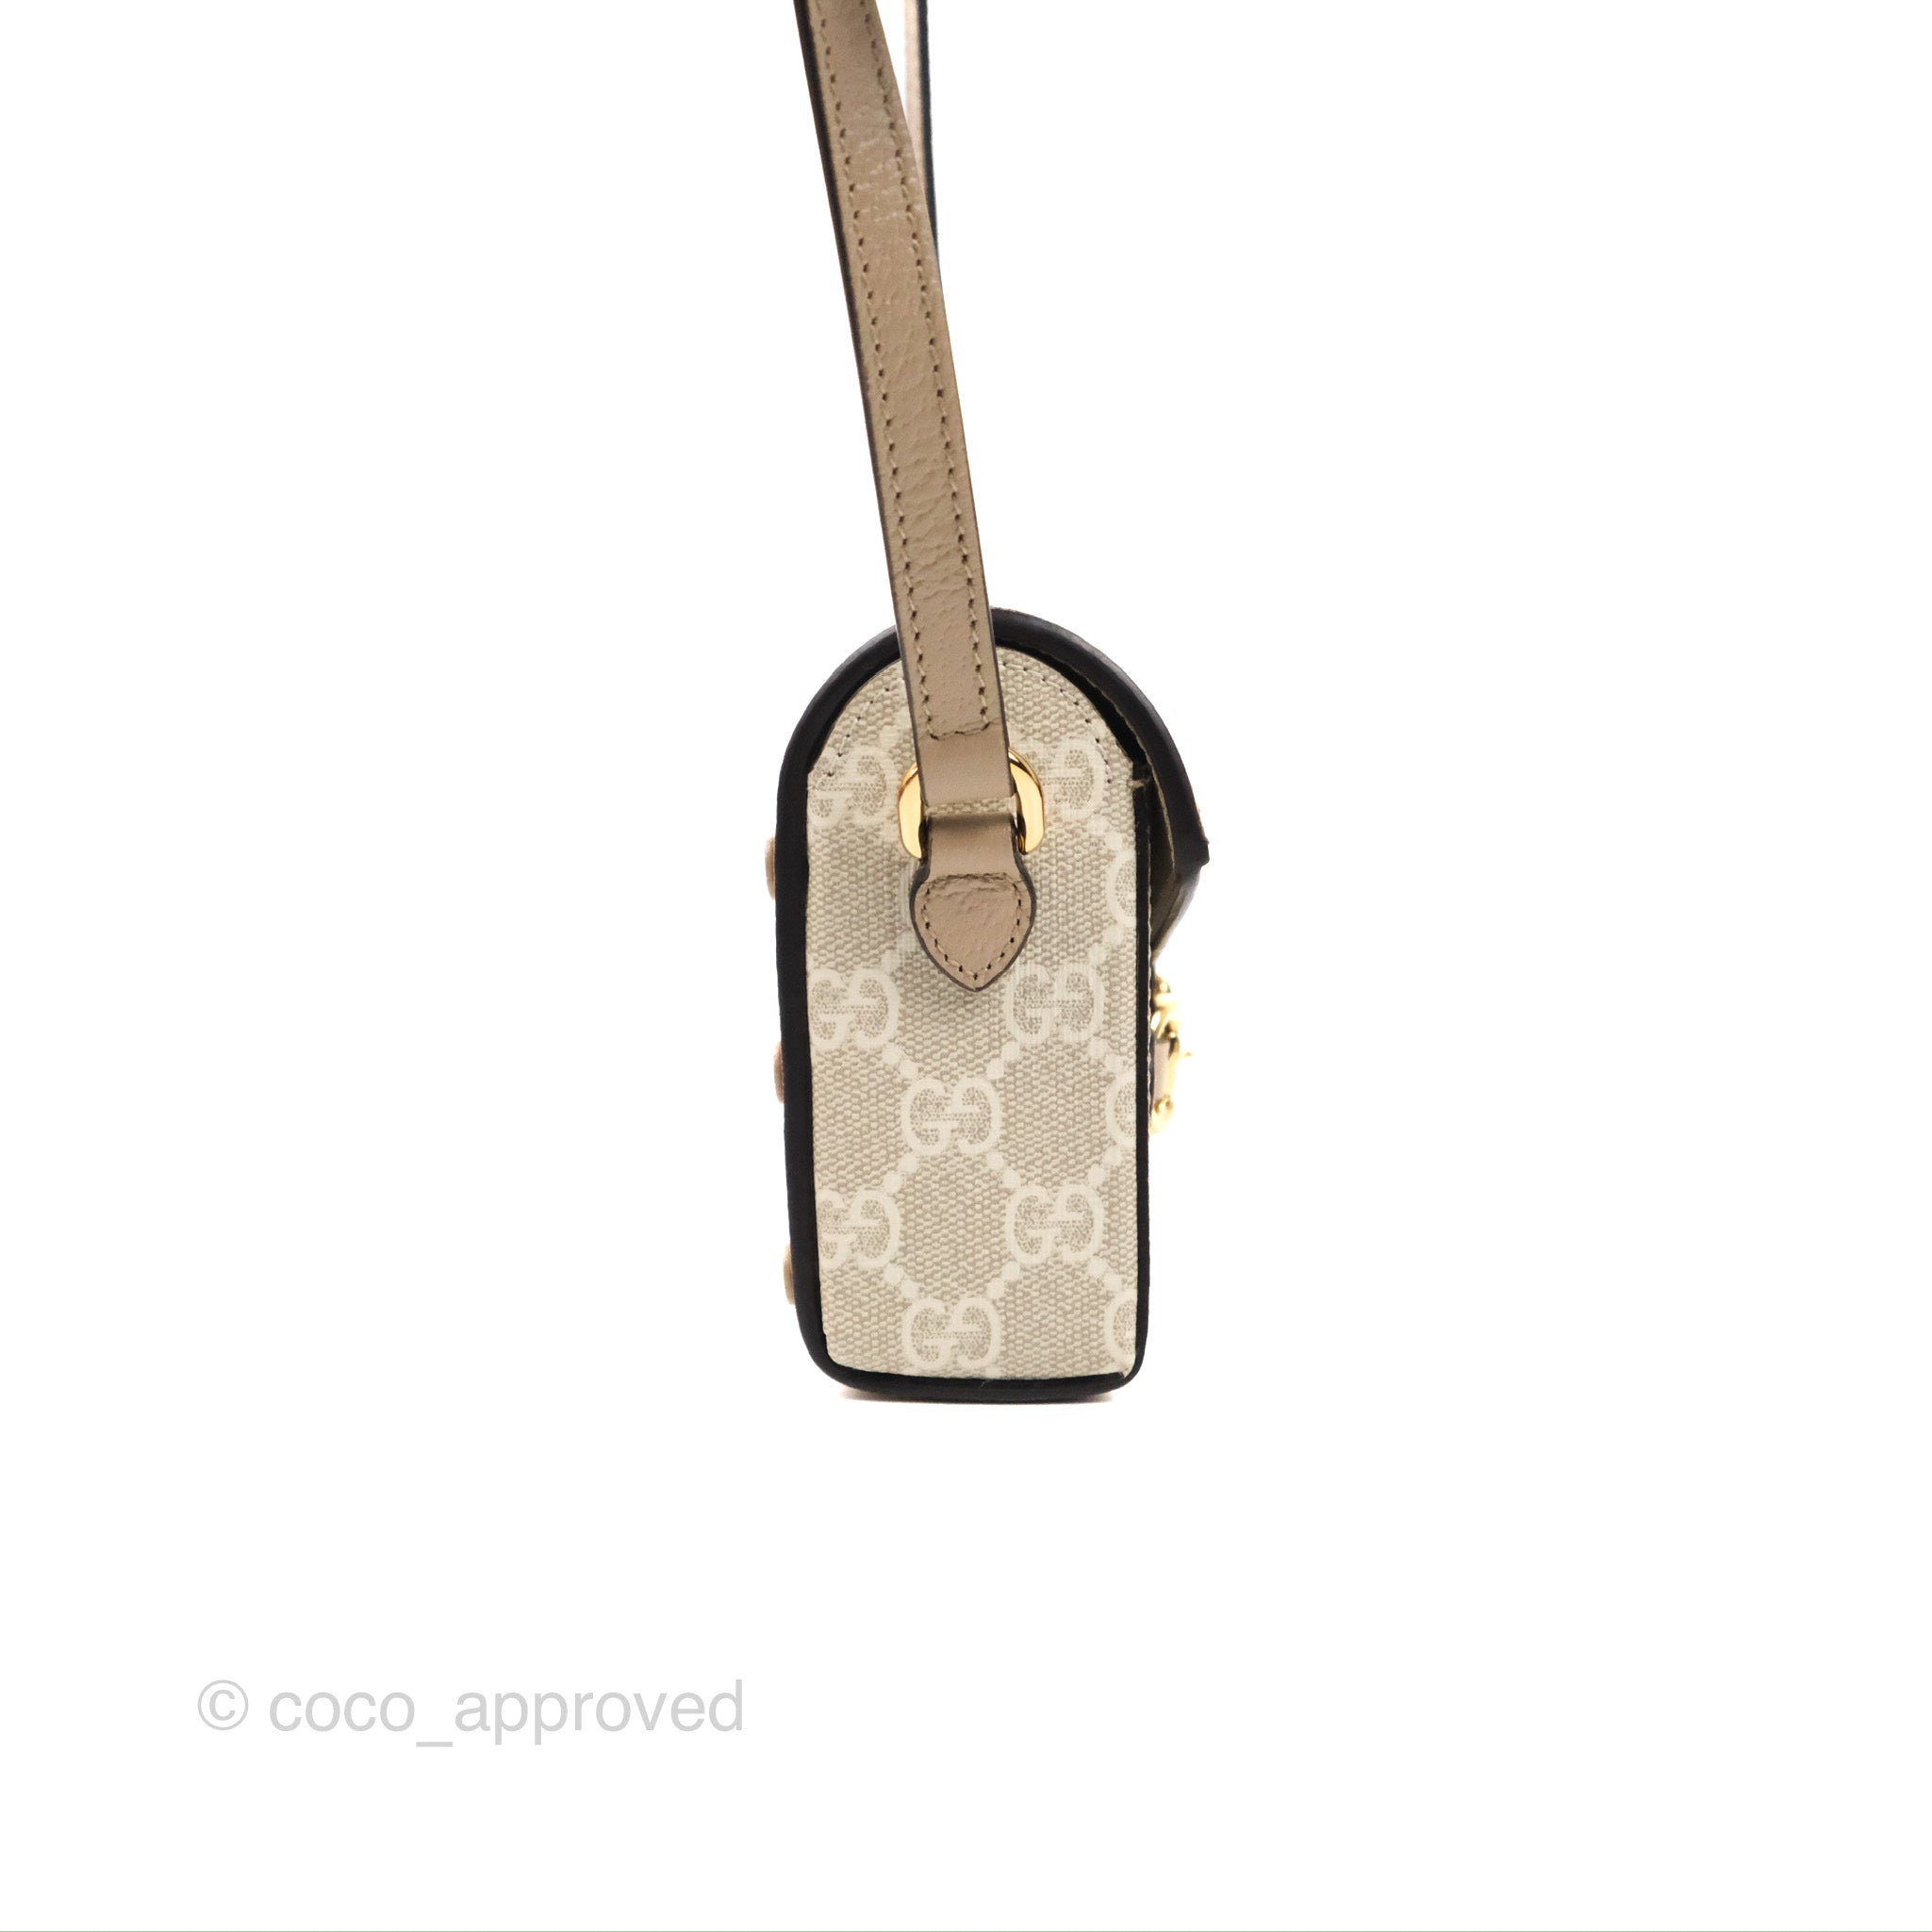 Gucci Horsebit 1955 mini bag in beige and white GG Supreme